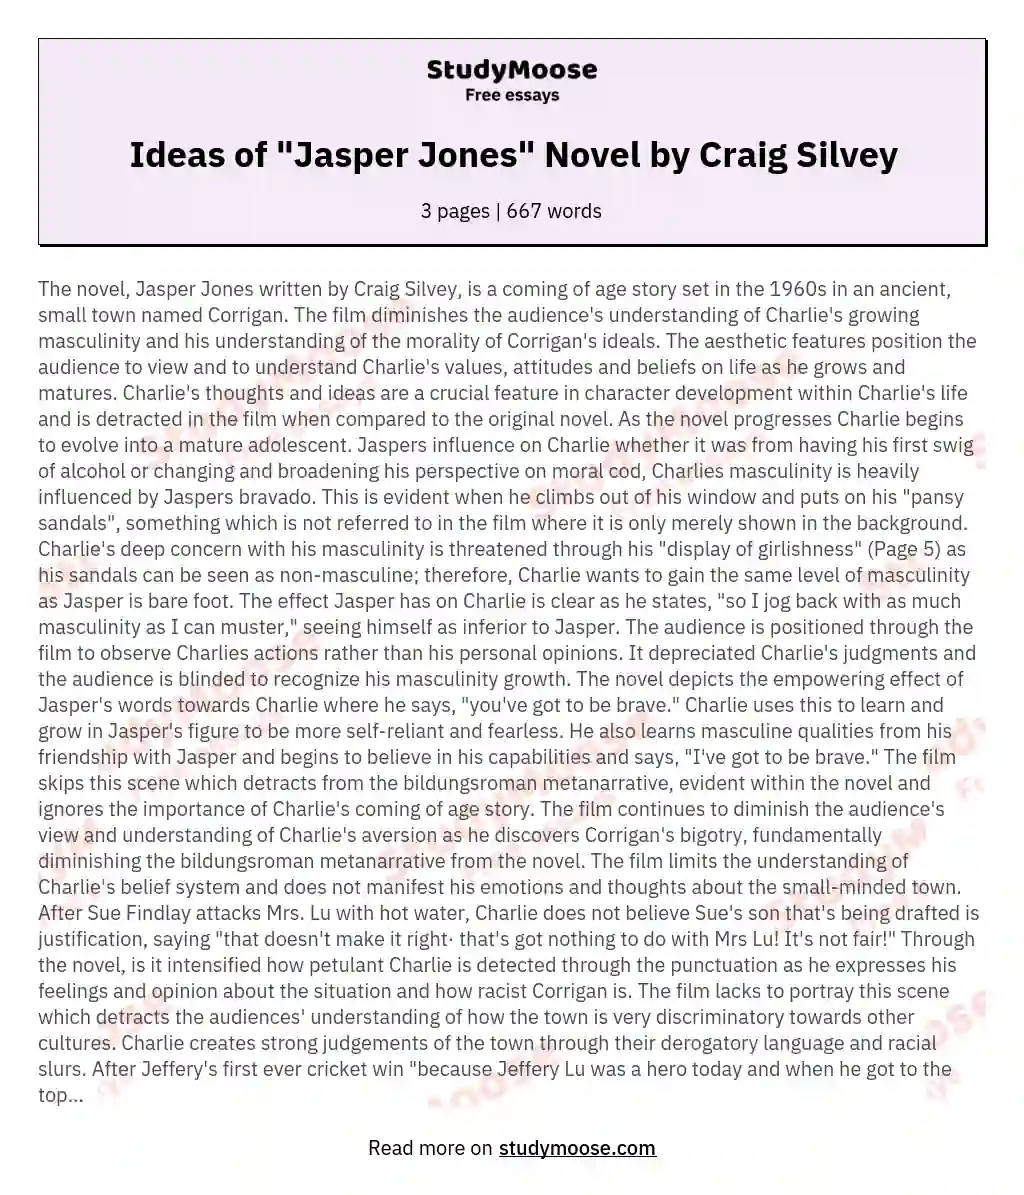 Ideas of "Jasper Jones" Novel by Craig Silvey essay